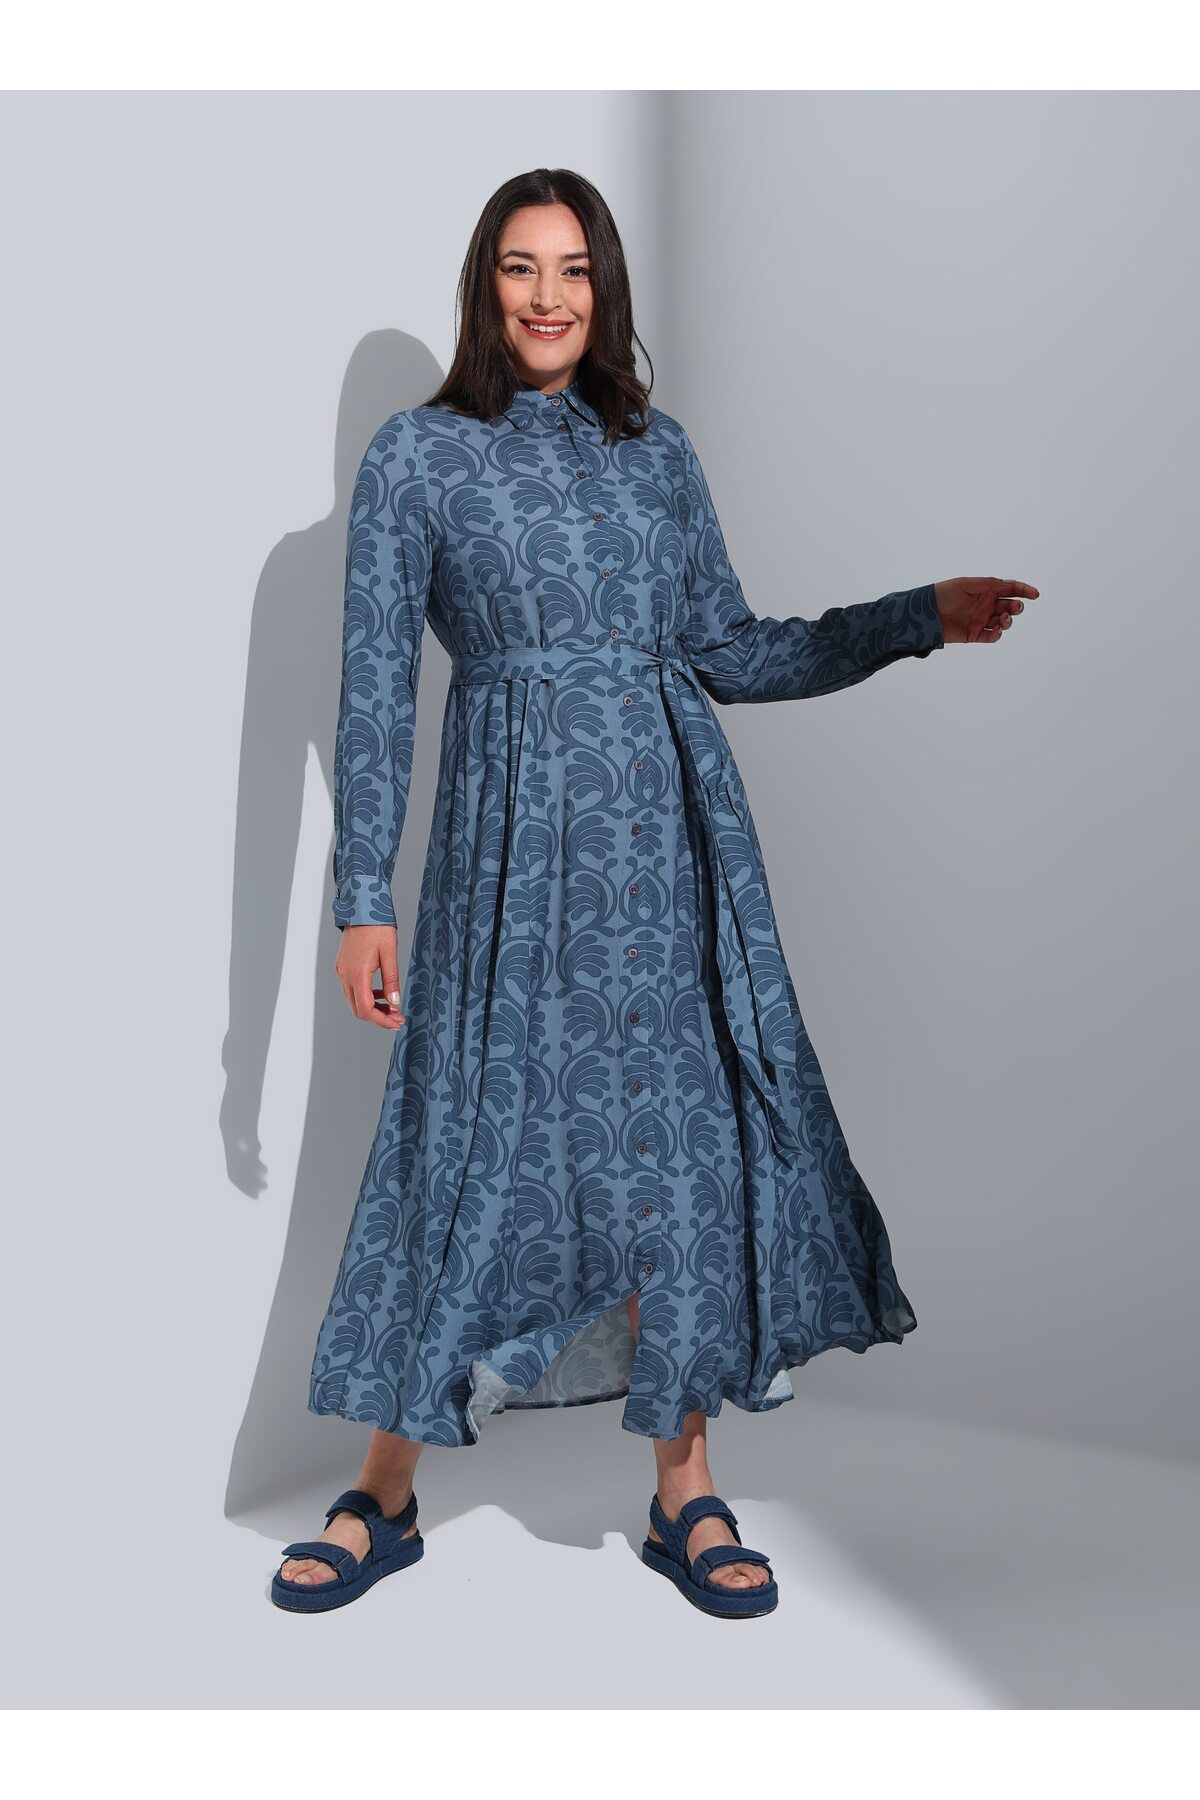 Alia Büyük Beden Boydan Düğmeli Desenli Tesettür Elbise - Mavi - Alia